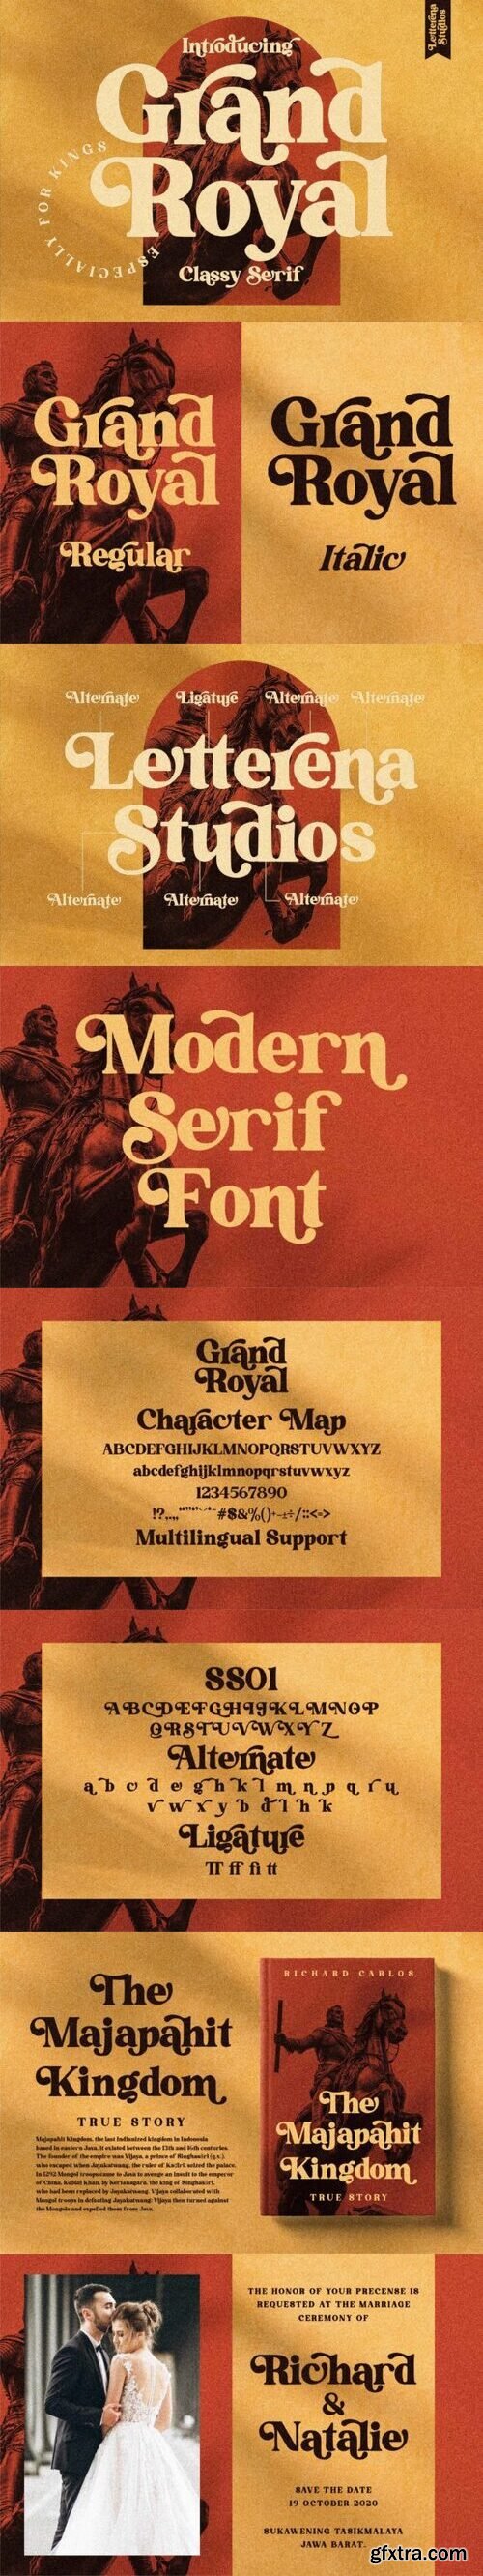 Grand Royal Font